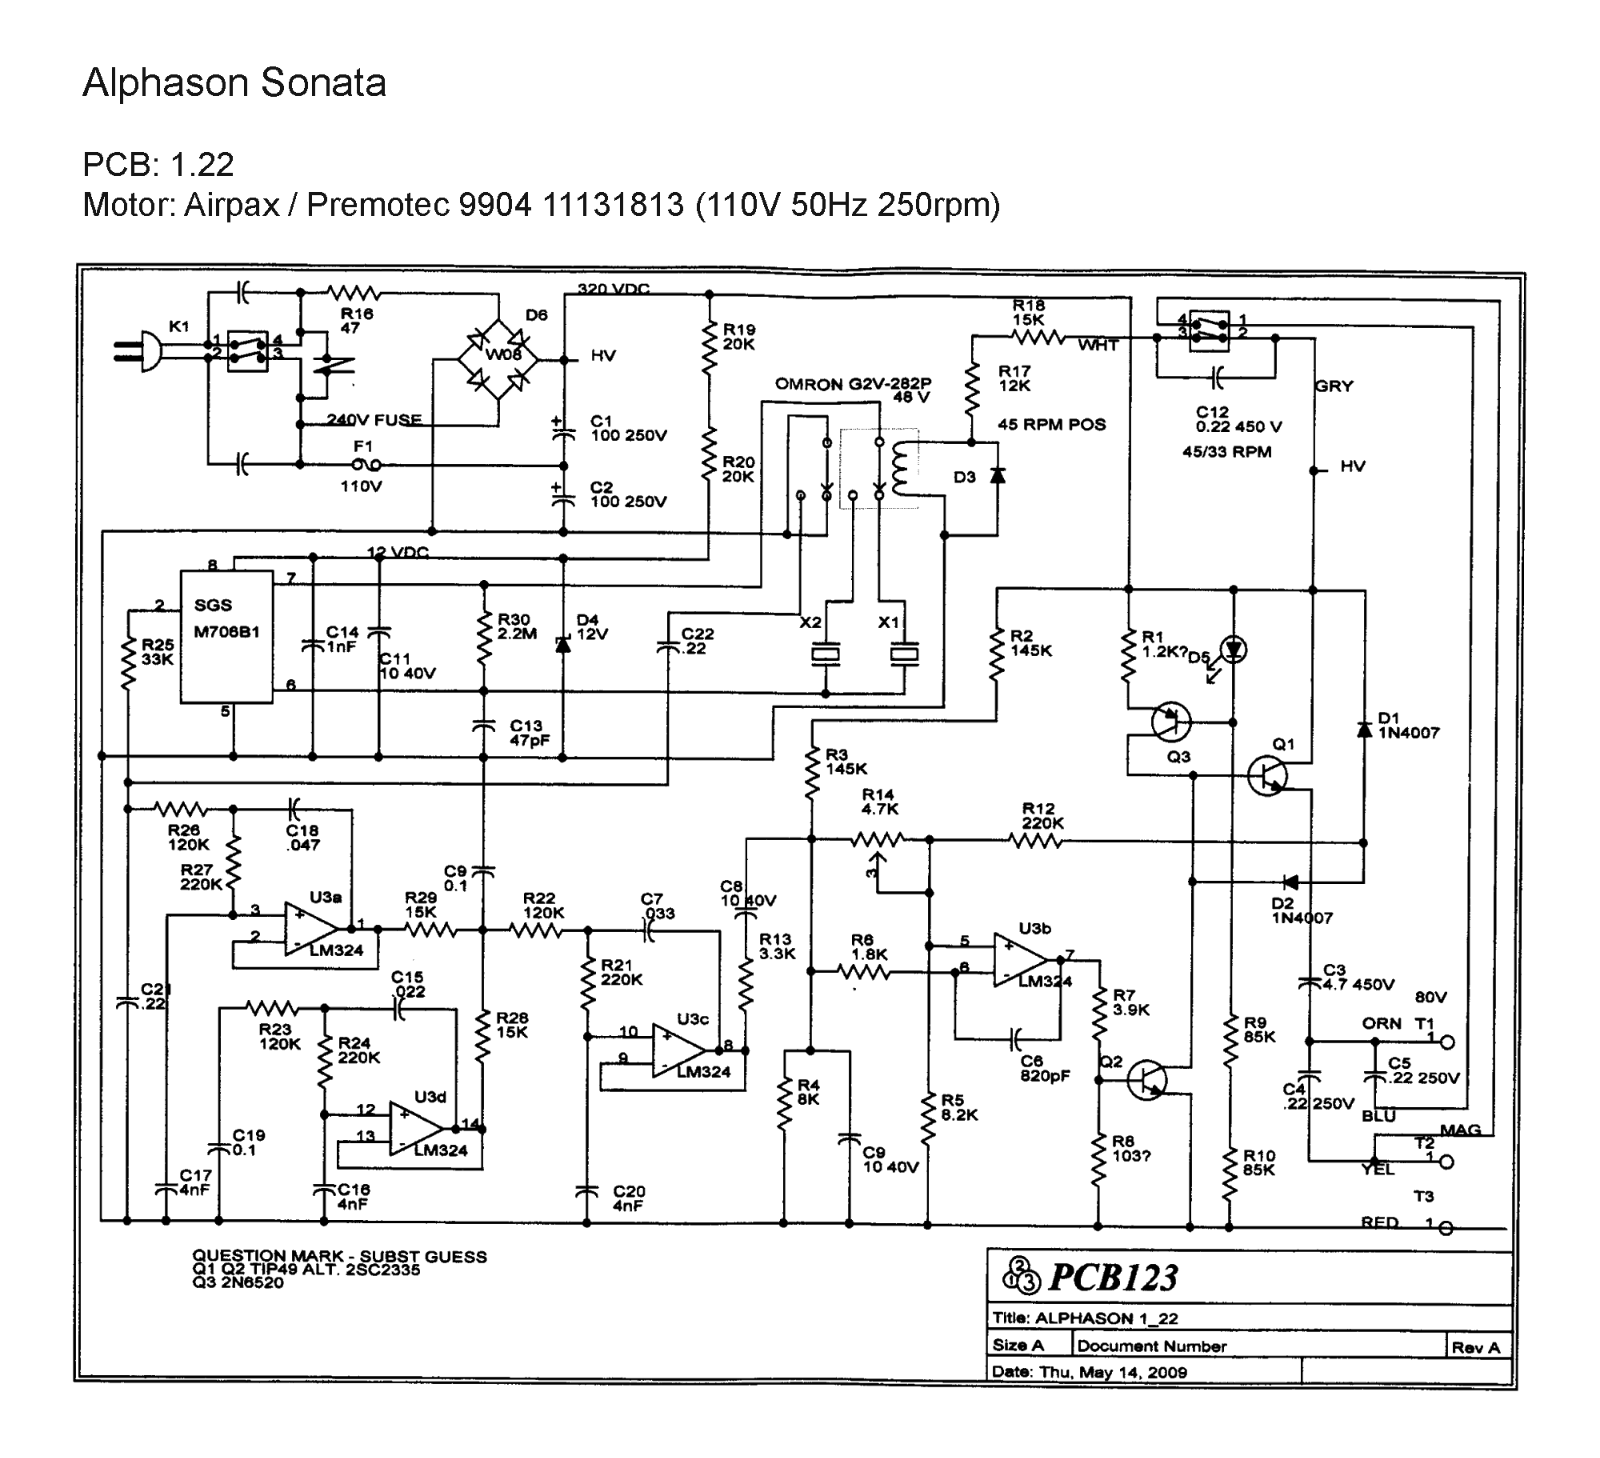 Alphason Sonata Schematic